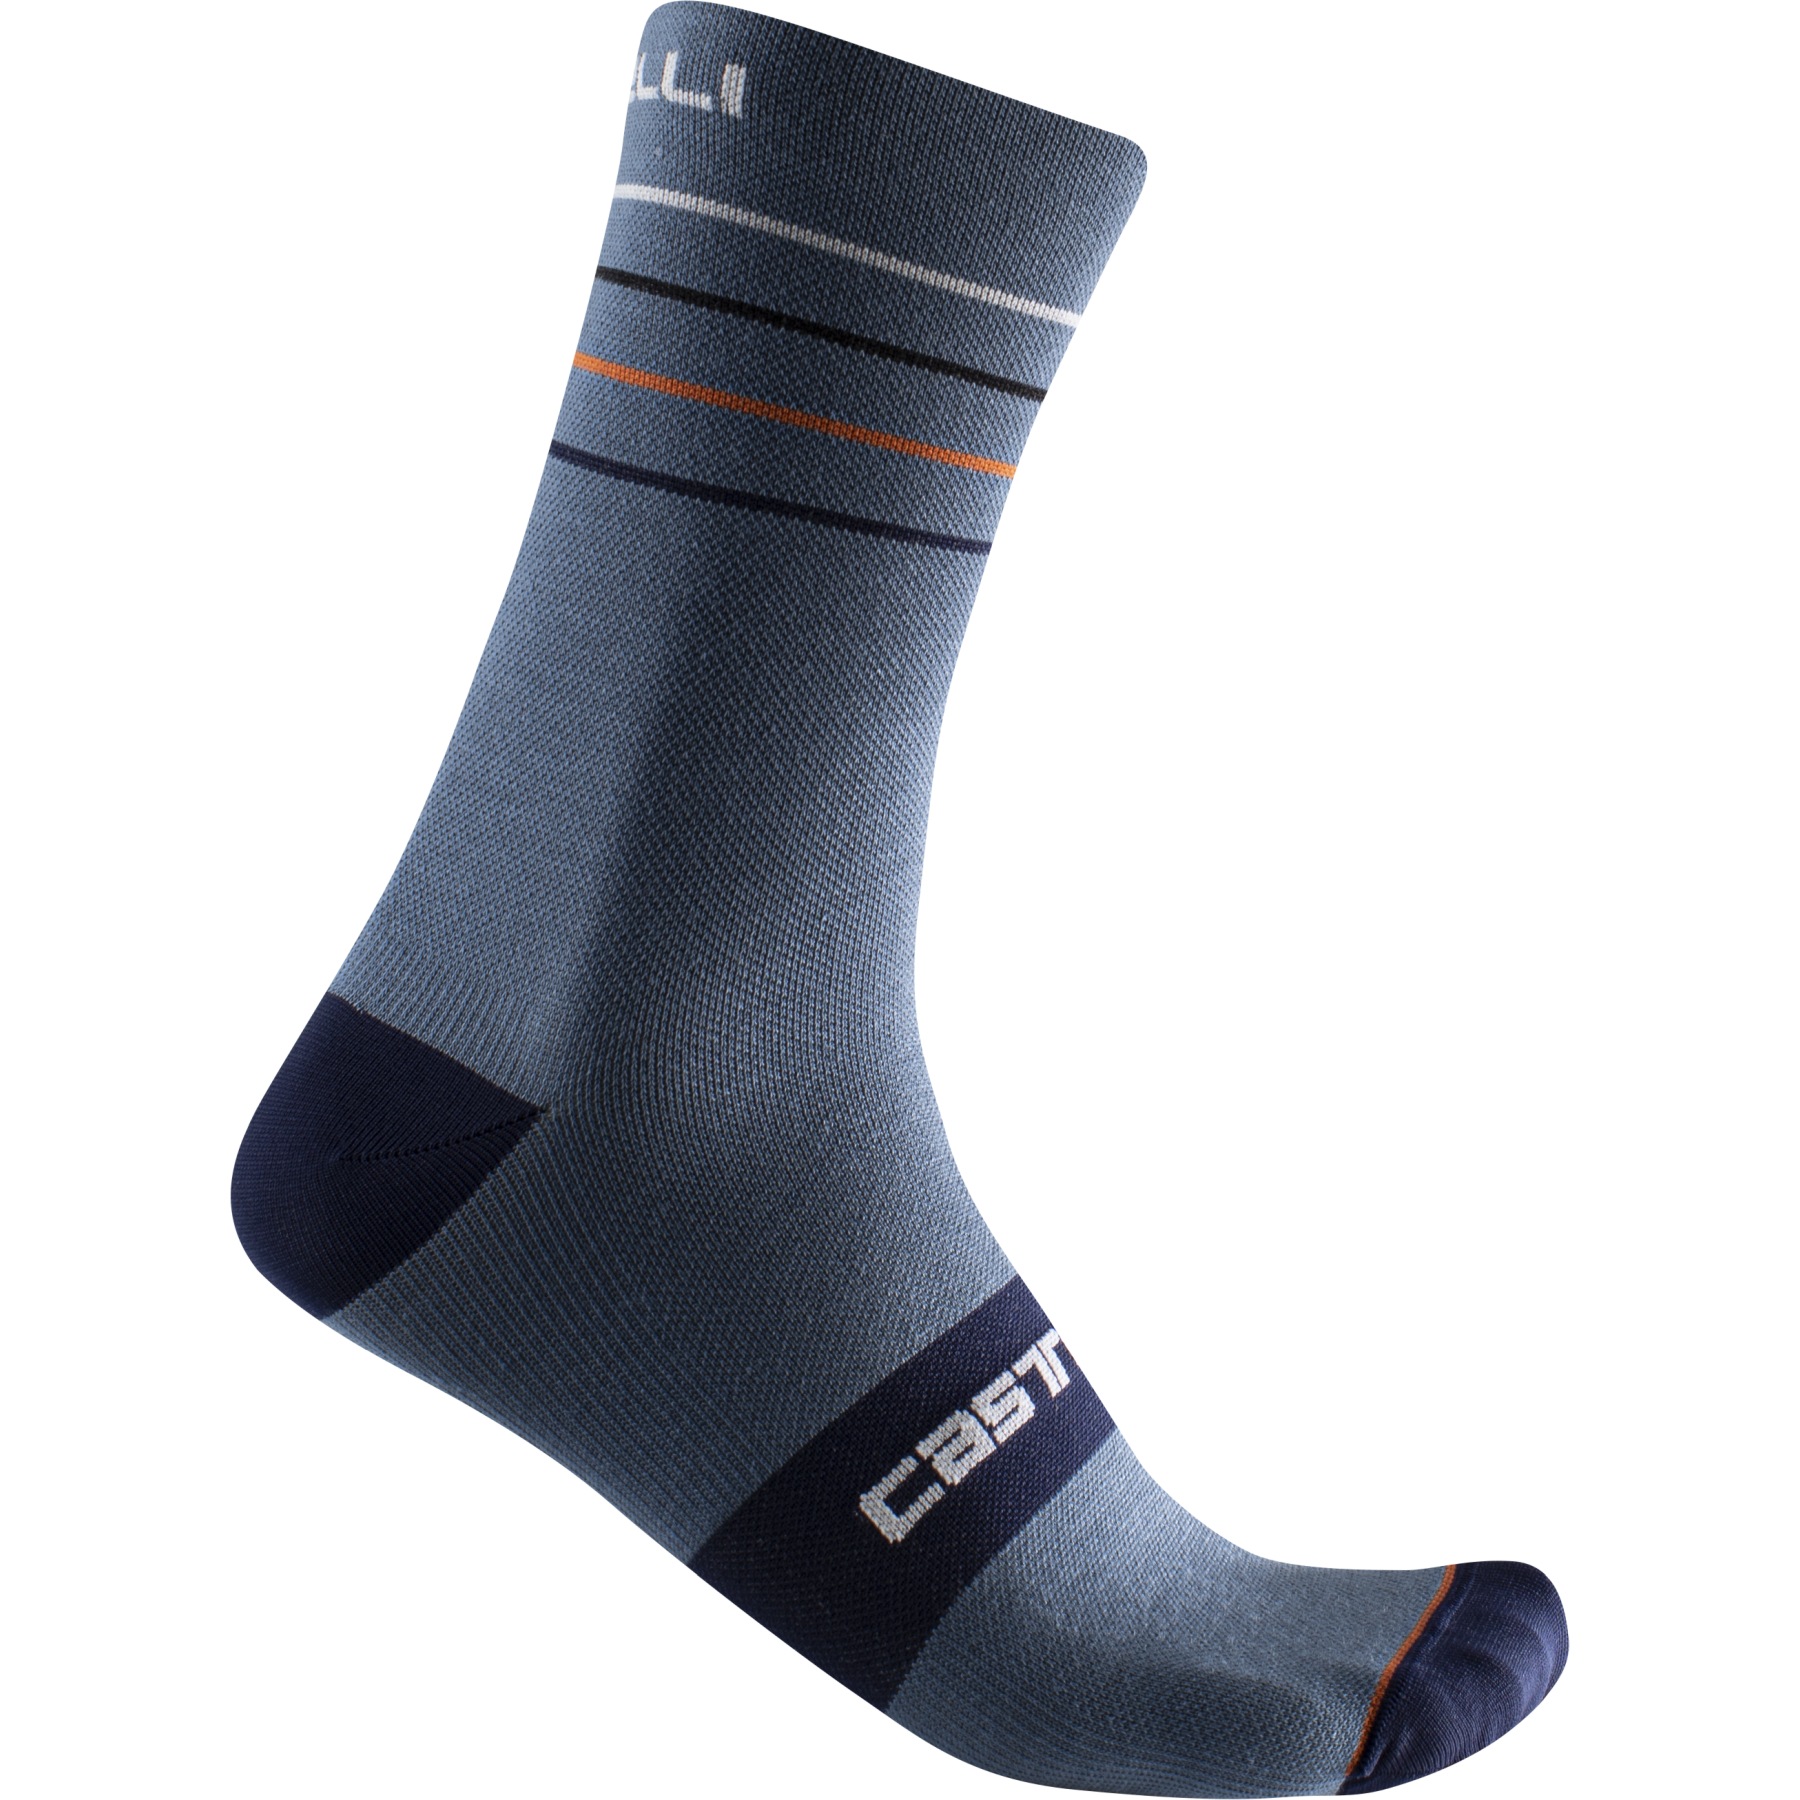 Bild von Castelli Endurance 15 Socken - light steel blue/pop orange-white 062